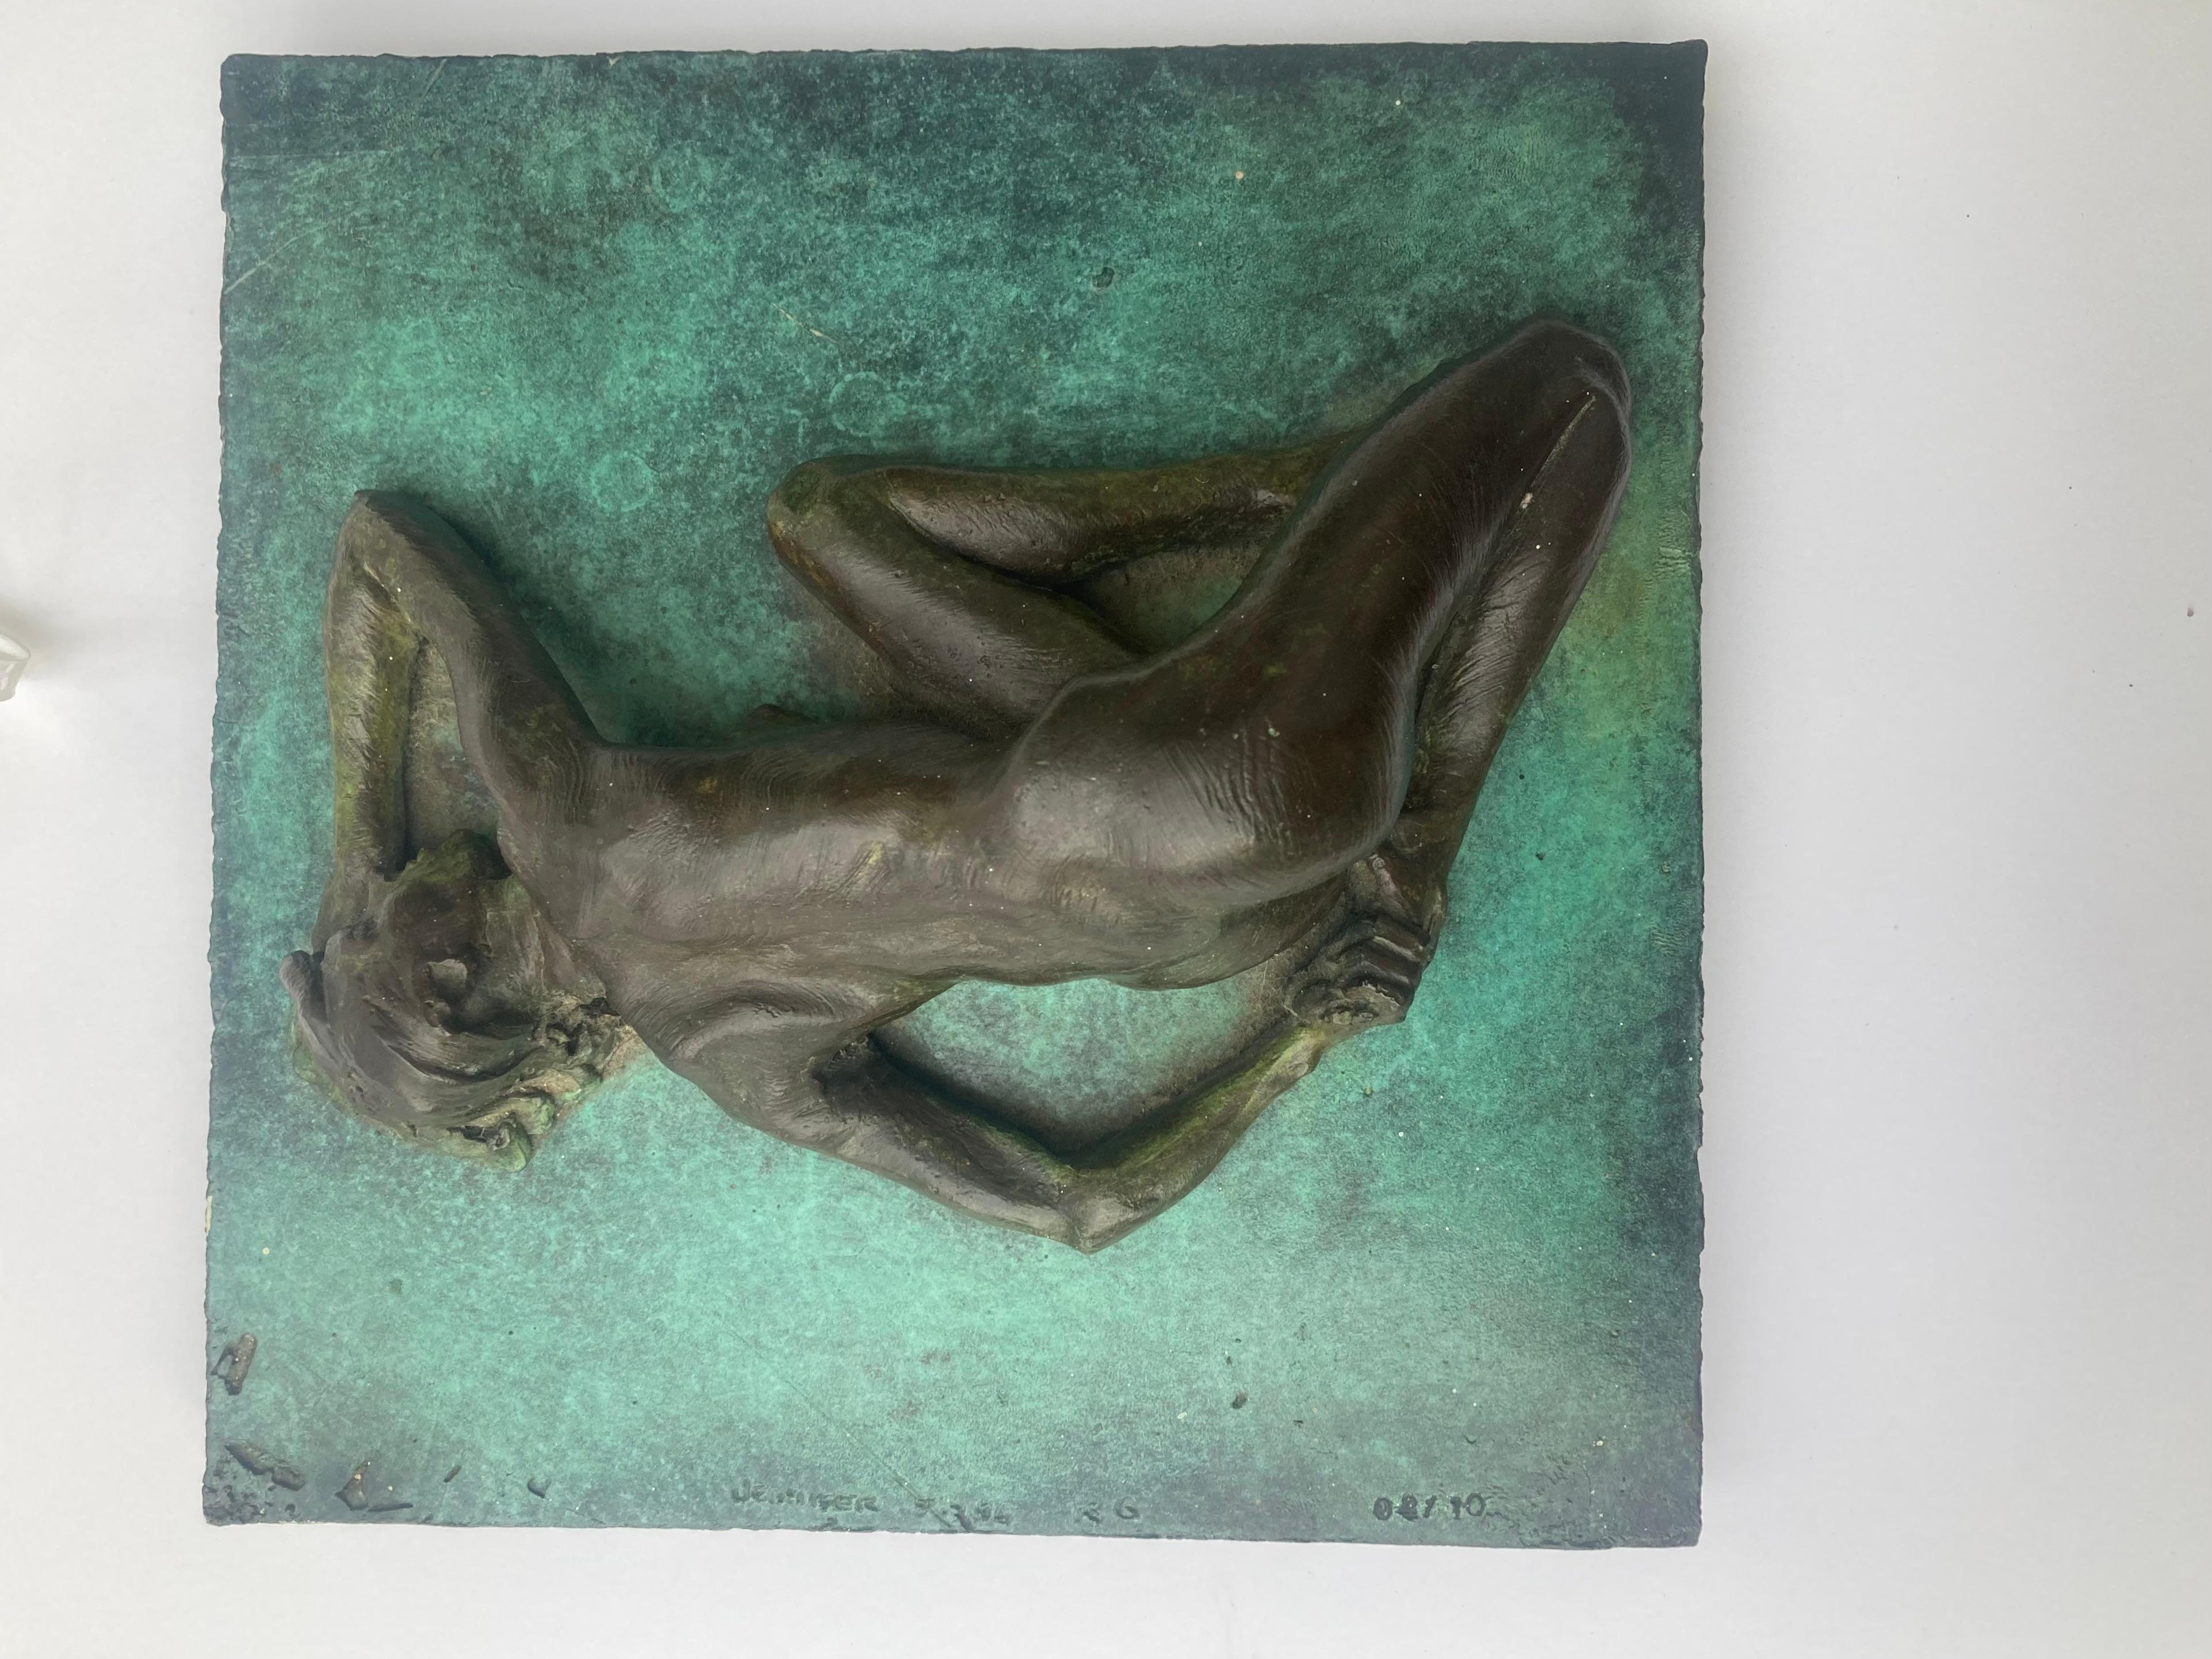 Moulage Sculpture de nu en bronze de Robert Graham, / mur/table TitreJennifer4/10,1996.RG en vente